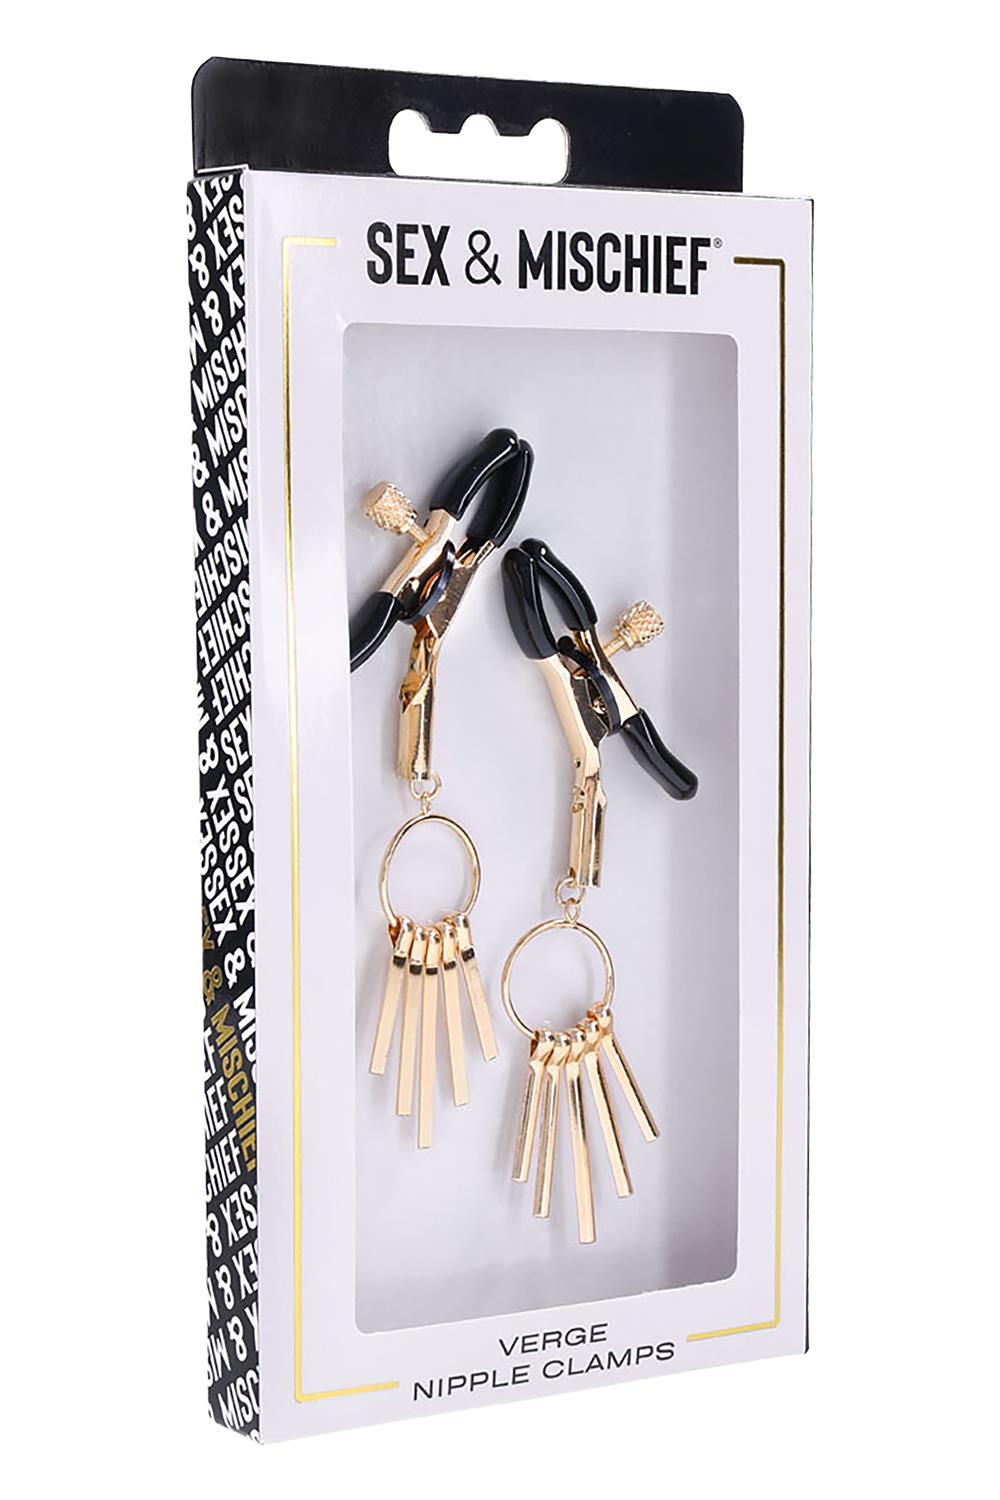 Sex & Mischief  -  Verge Nipple Clamps,